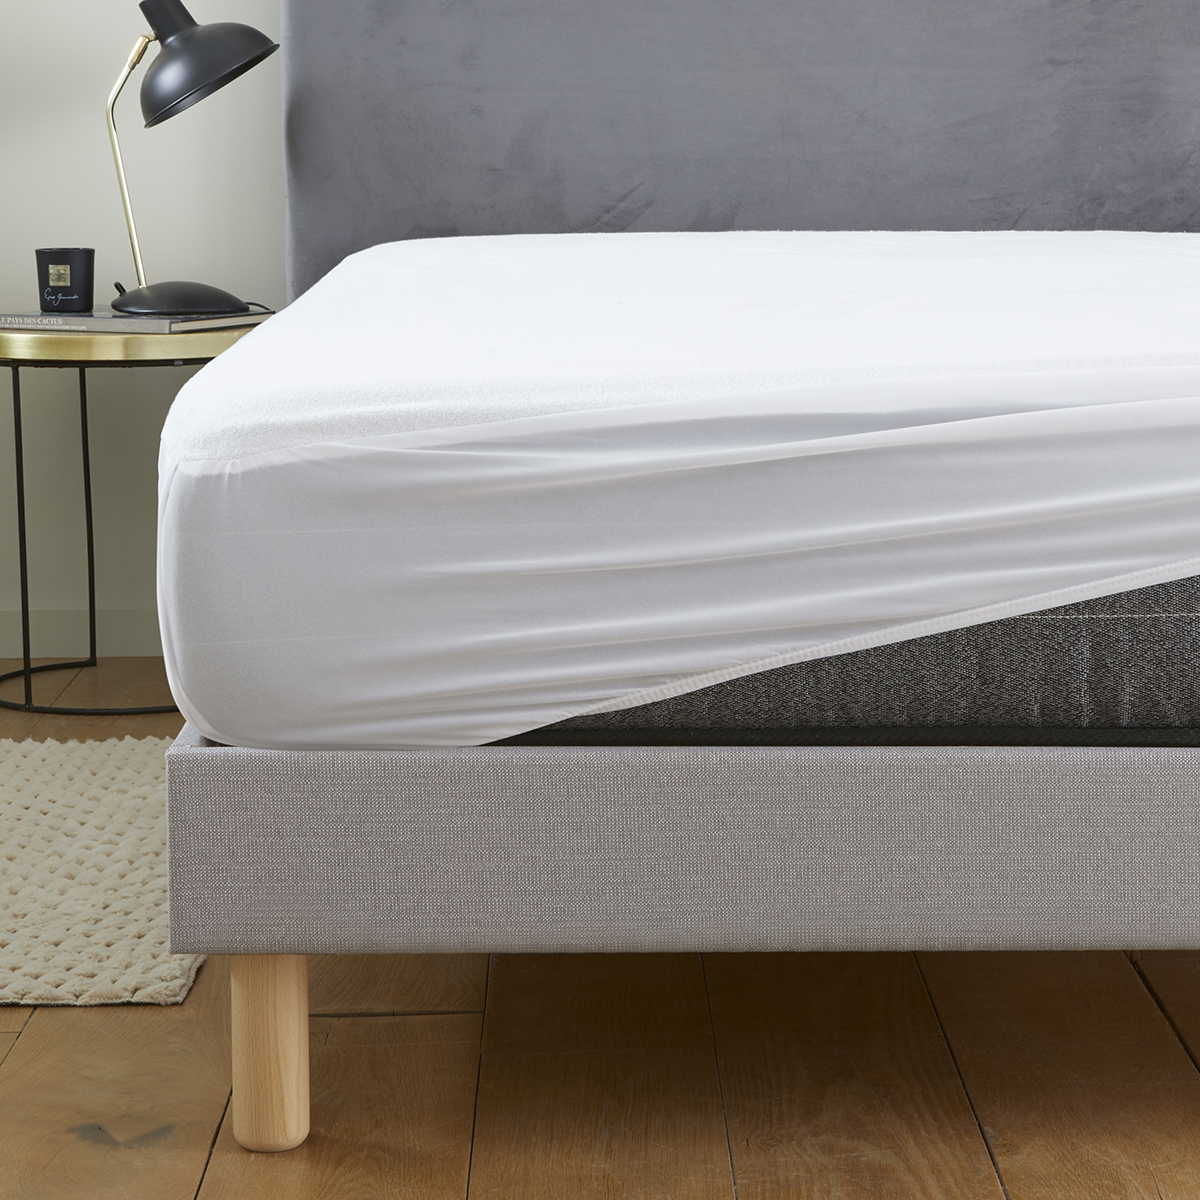 Alèse de lit protège-matelas pour lit 2 places / 2 personnes